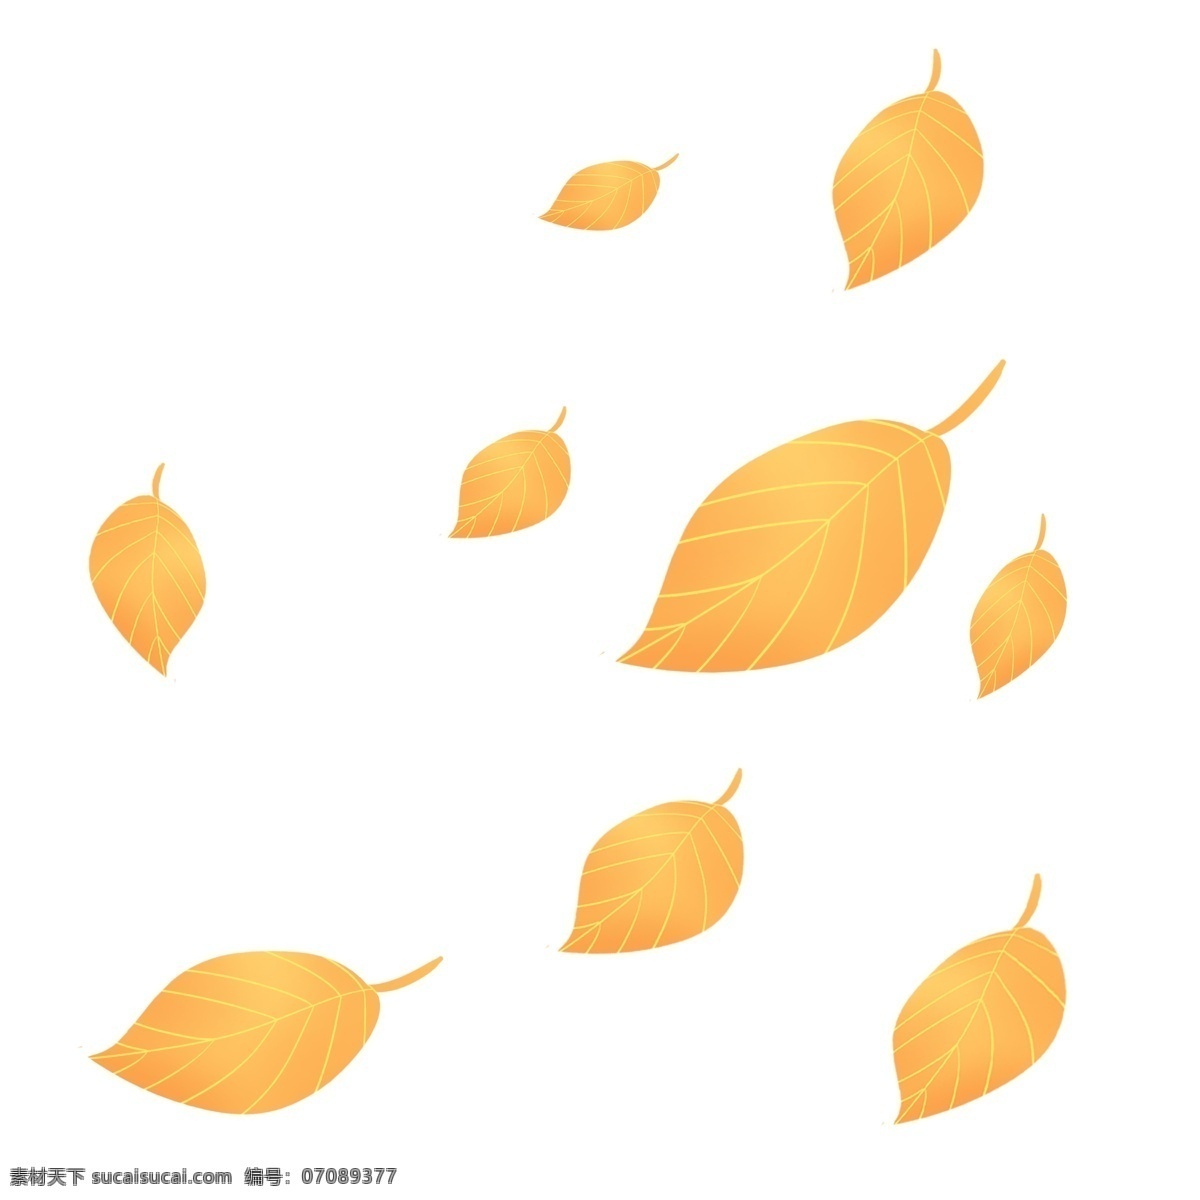 金色 秋天 飘零 落叶 秋季 金秋 树叶 叶子 黄色 金色叶子 黄色叶子 飘落 零落